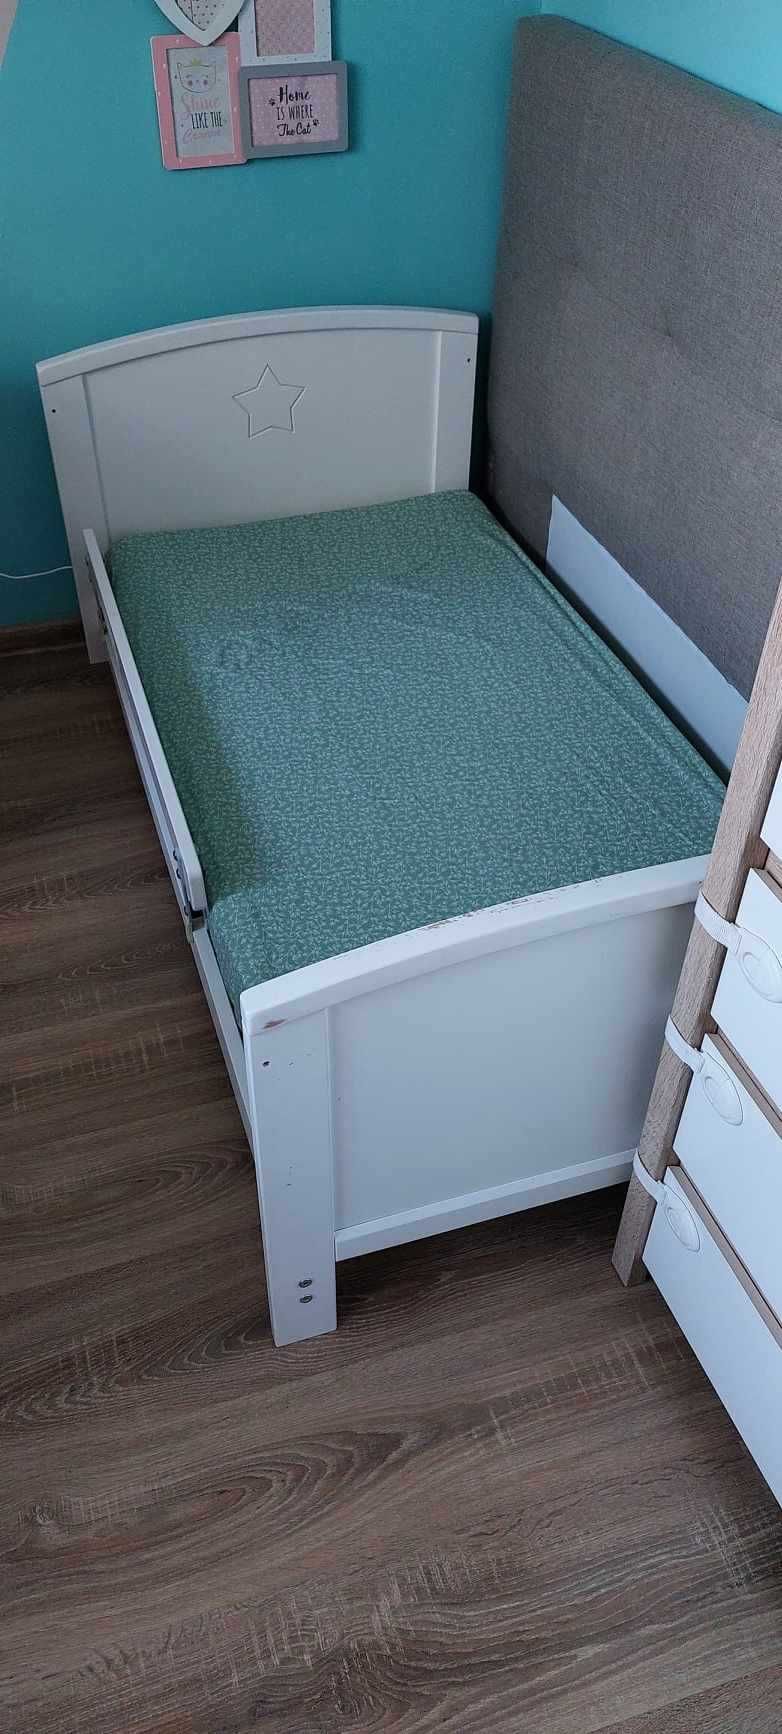 Łóżeczko dziecięce Woodies Starlight Cot Bed 140 × 70 cm – 2 w 1